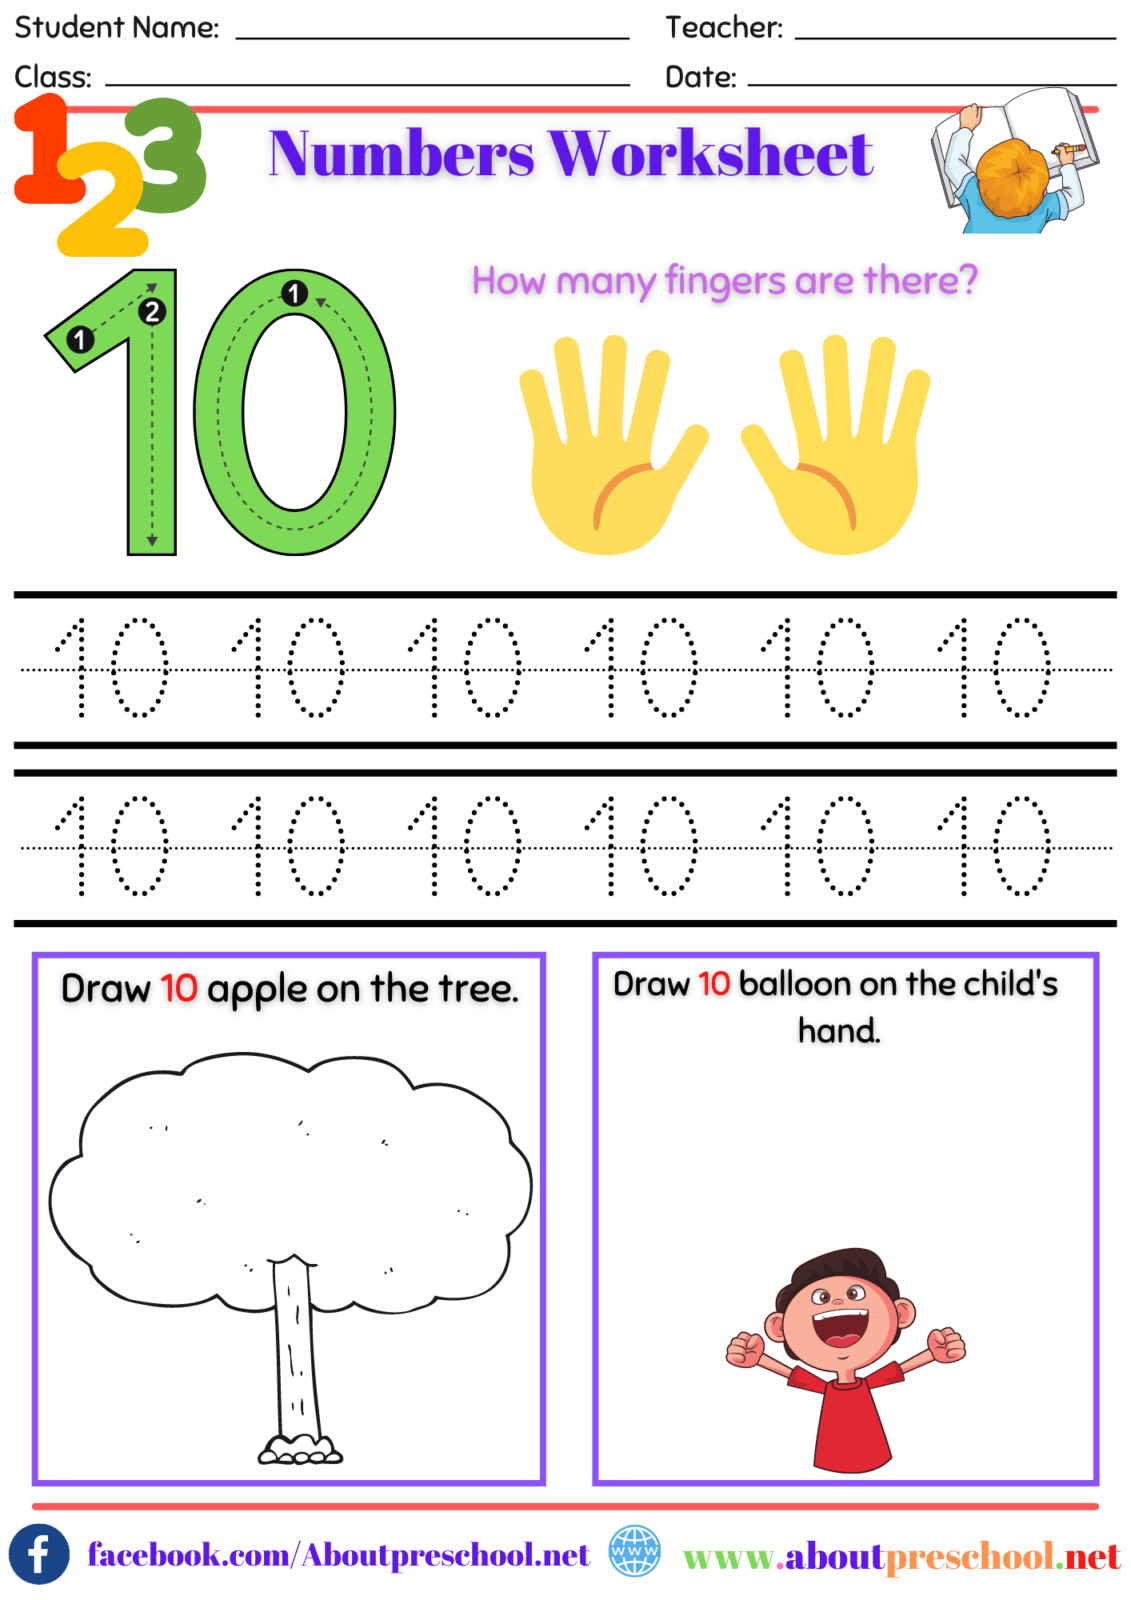 Number Worksheet Kindergarten 10 About Preschool